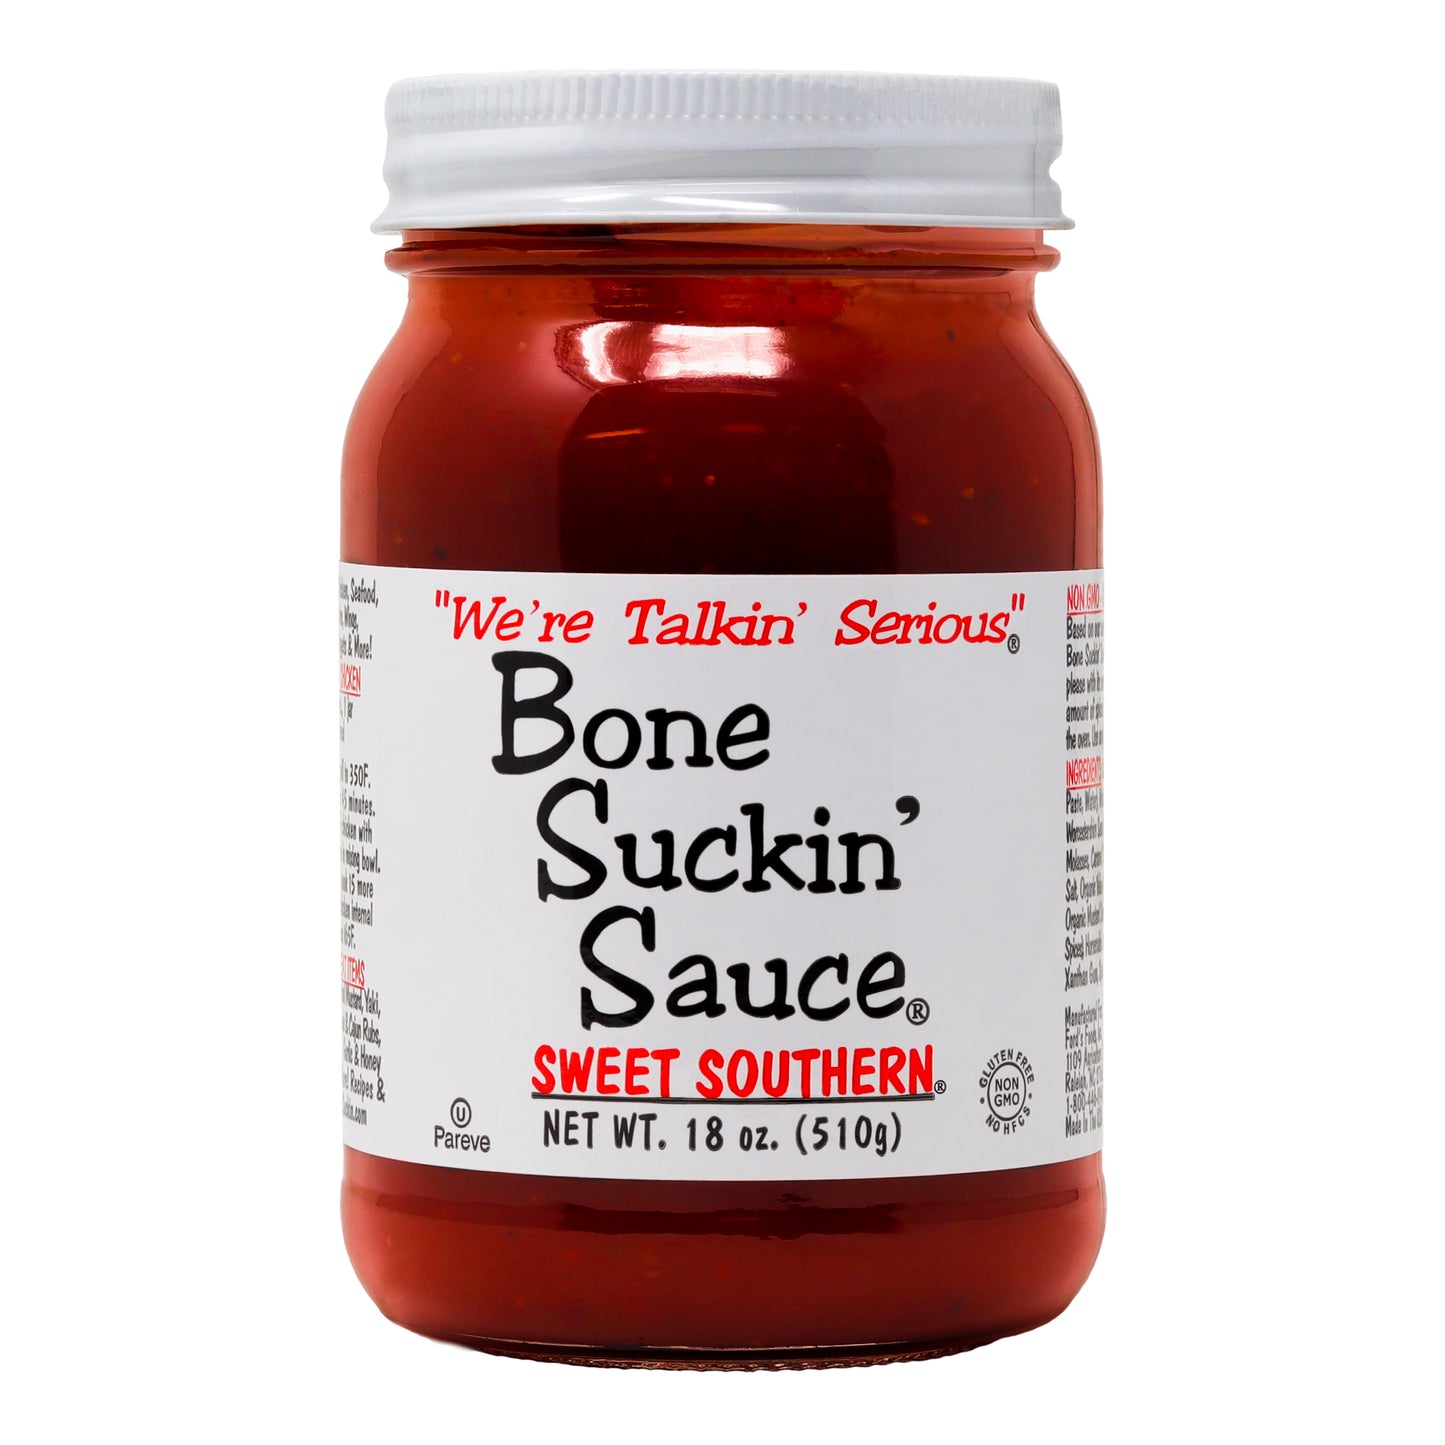 Bone Suckin' Sauce Sweet Southern, 18 oz., jar